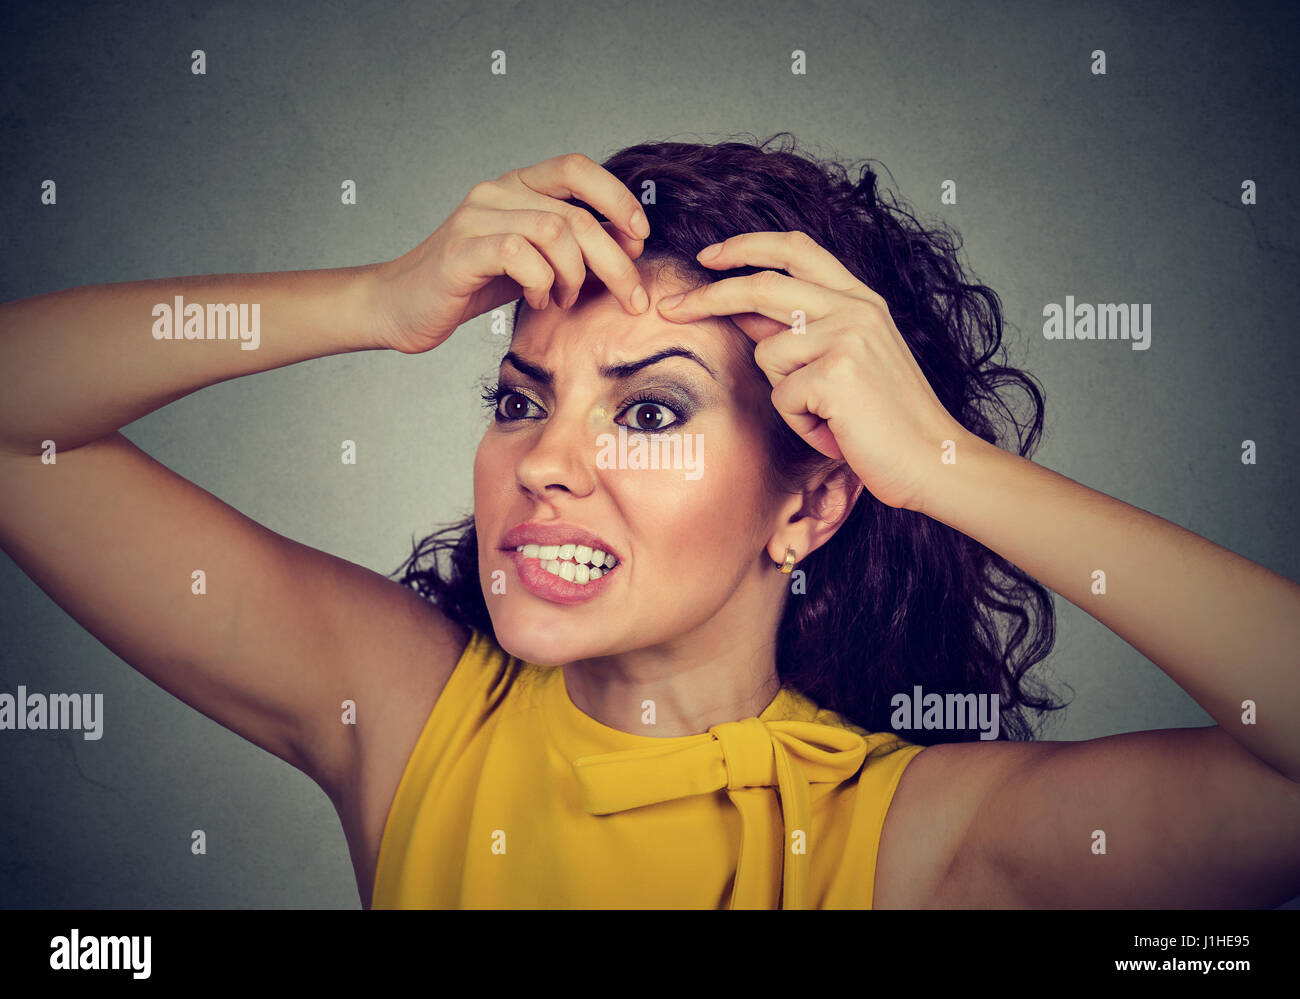 Closeup ritratto di una donna che guarda in uno specchio la spremitura di un acne o blackhead sulla sua faccia fronte Foto Stock